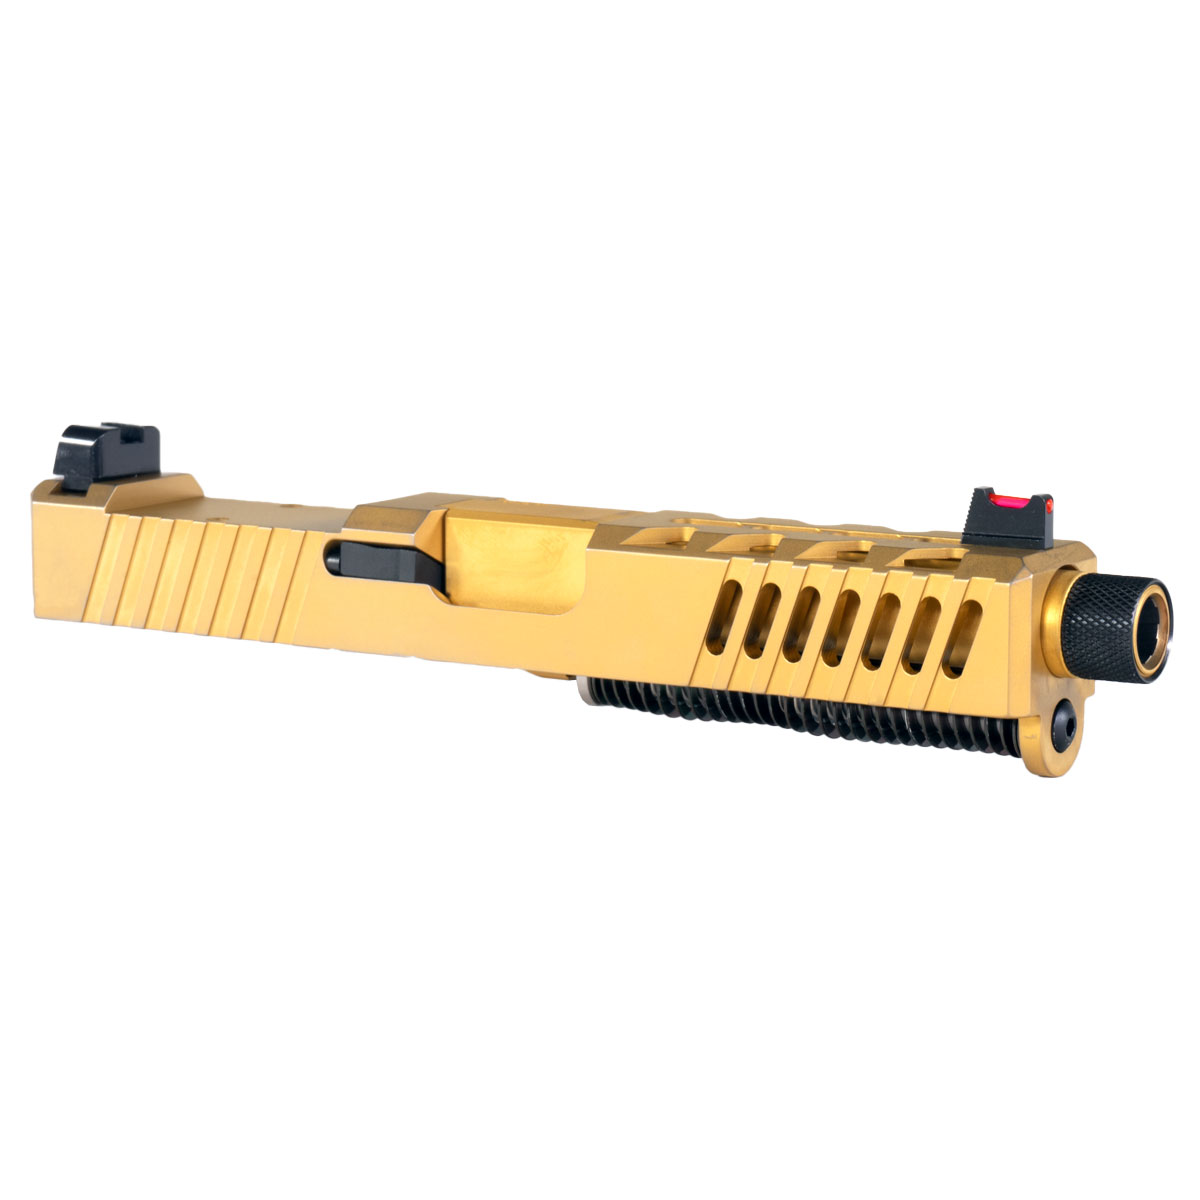 DD 'AU-197' 9mm Complete Slide Kit - Glock 19 Compatible